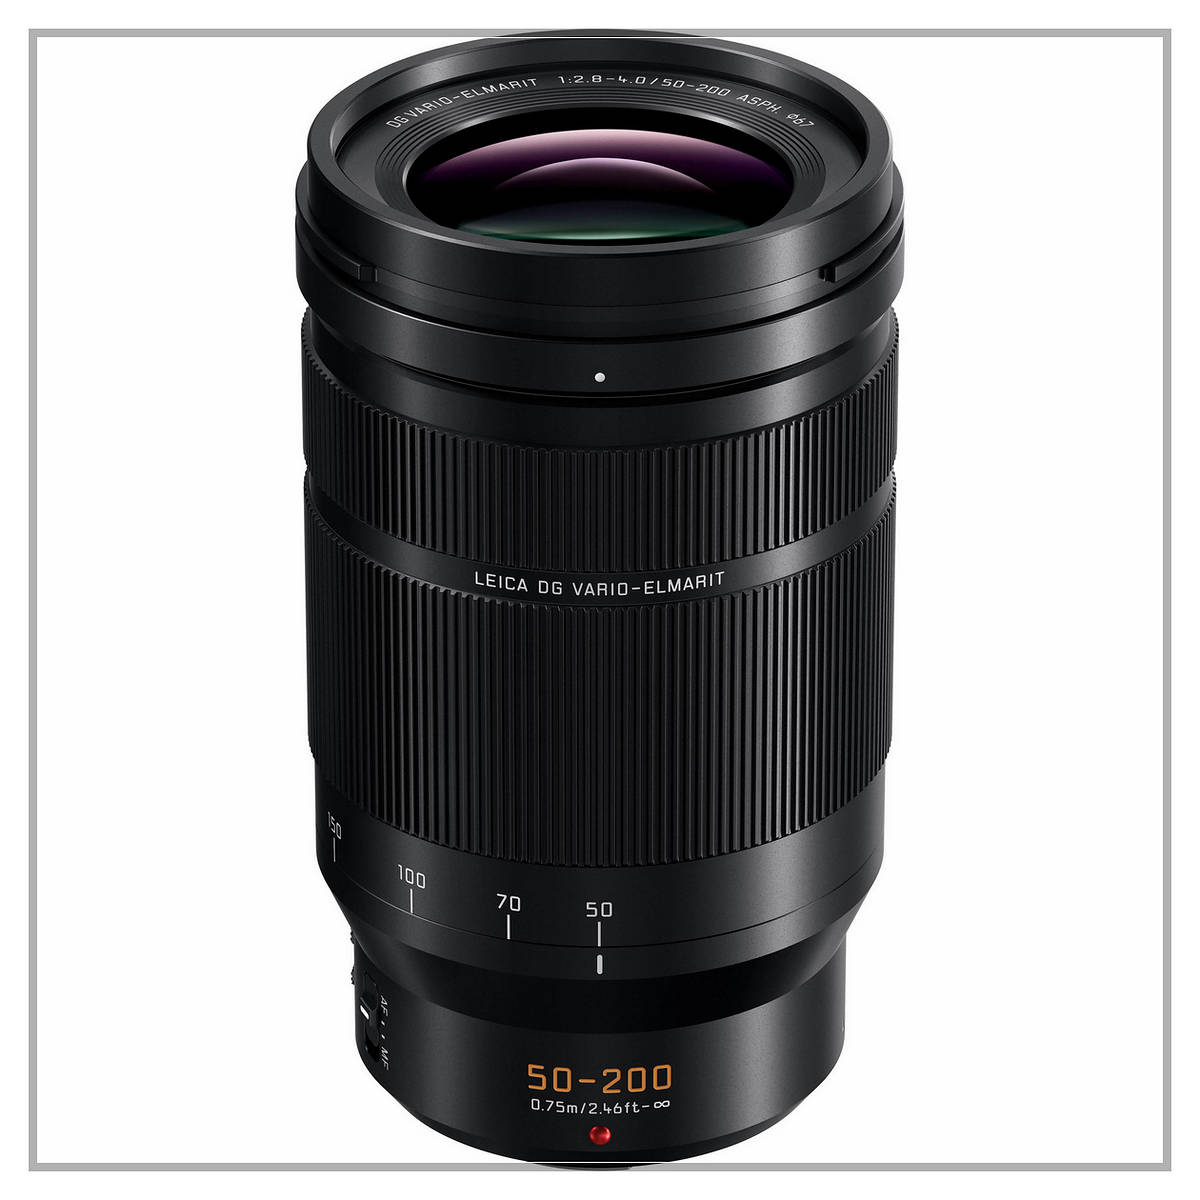 Panasonic Leica DG Vario-Elmarit Professional Lens 50-200 f2.8-4.0 ASPH